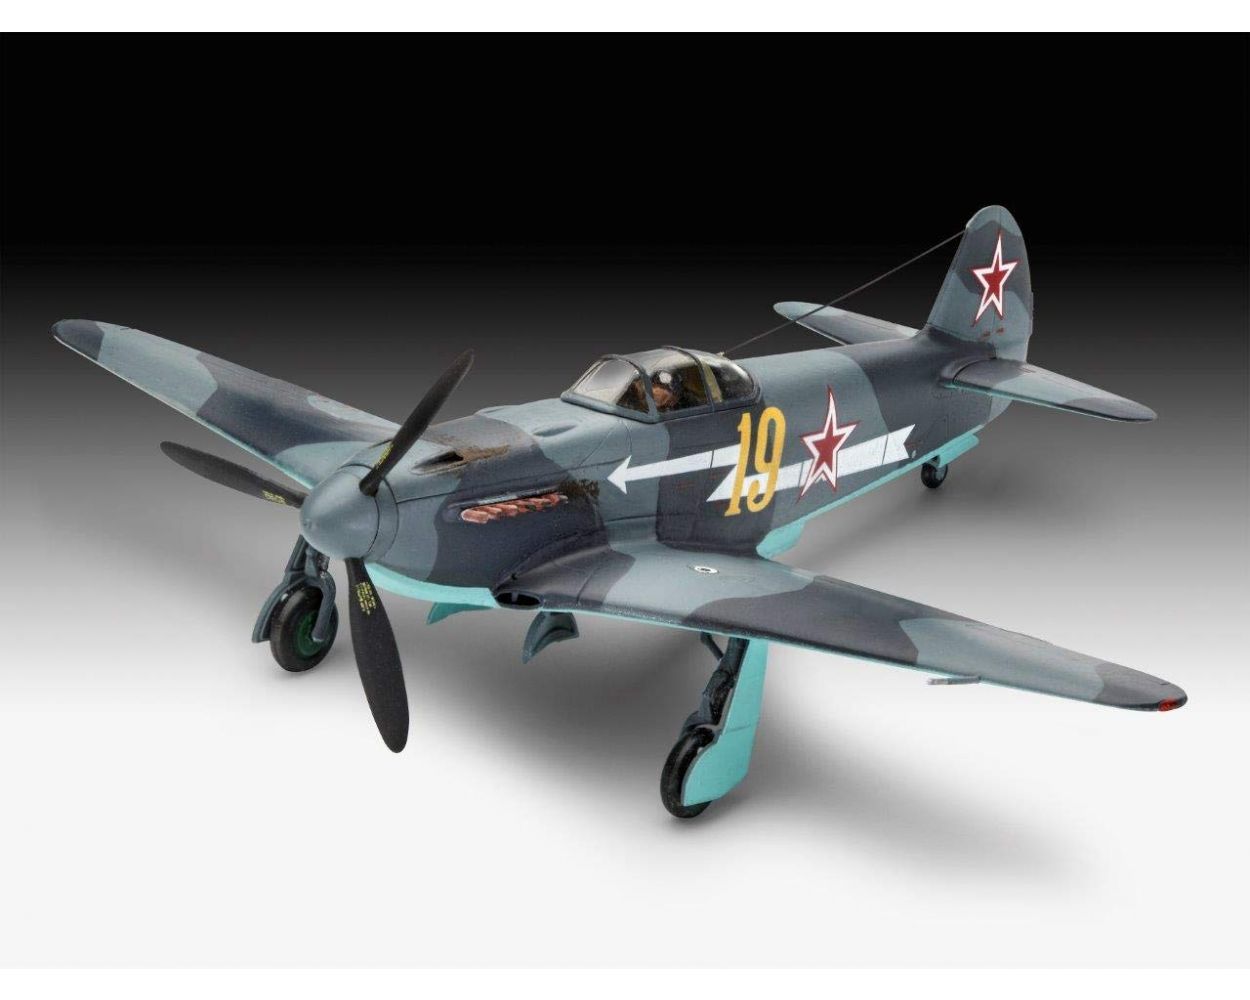 Jakowlew Jak-3 diecast 1:72 fighter model Amercom SL-39 